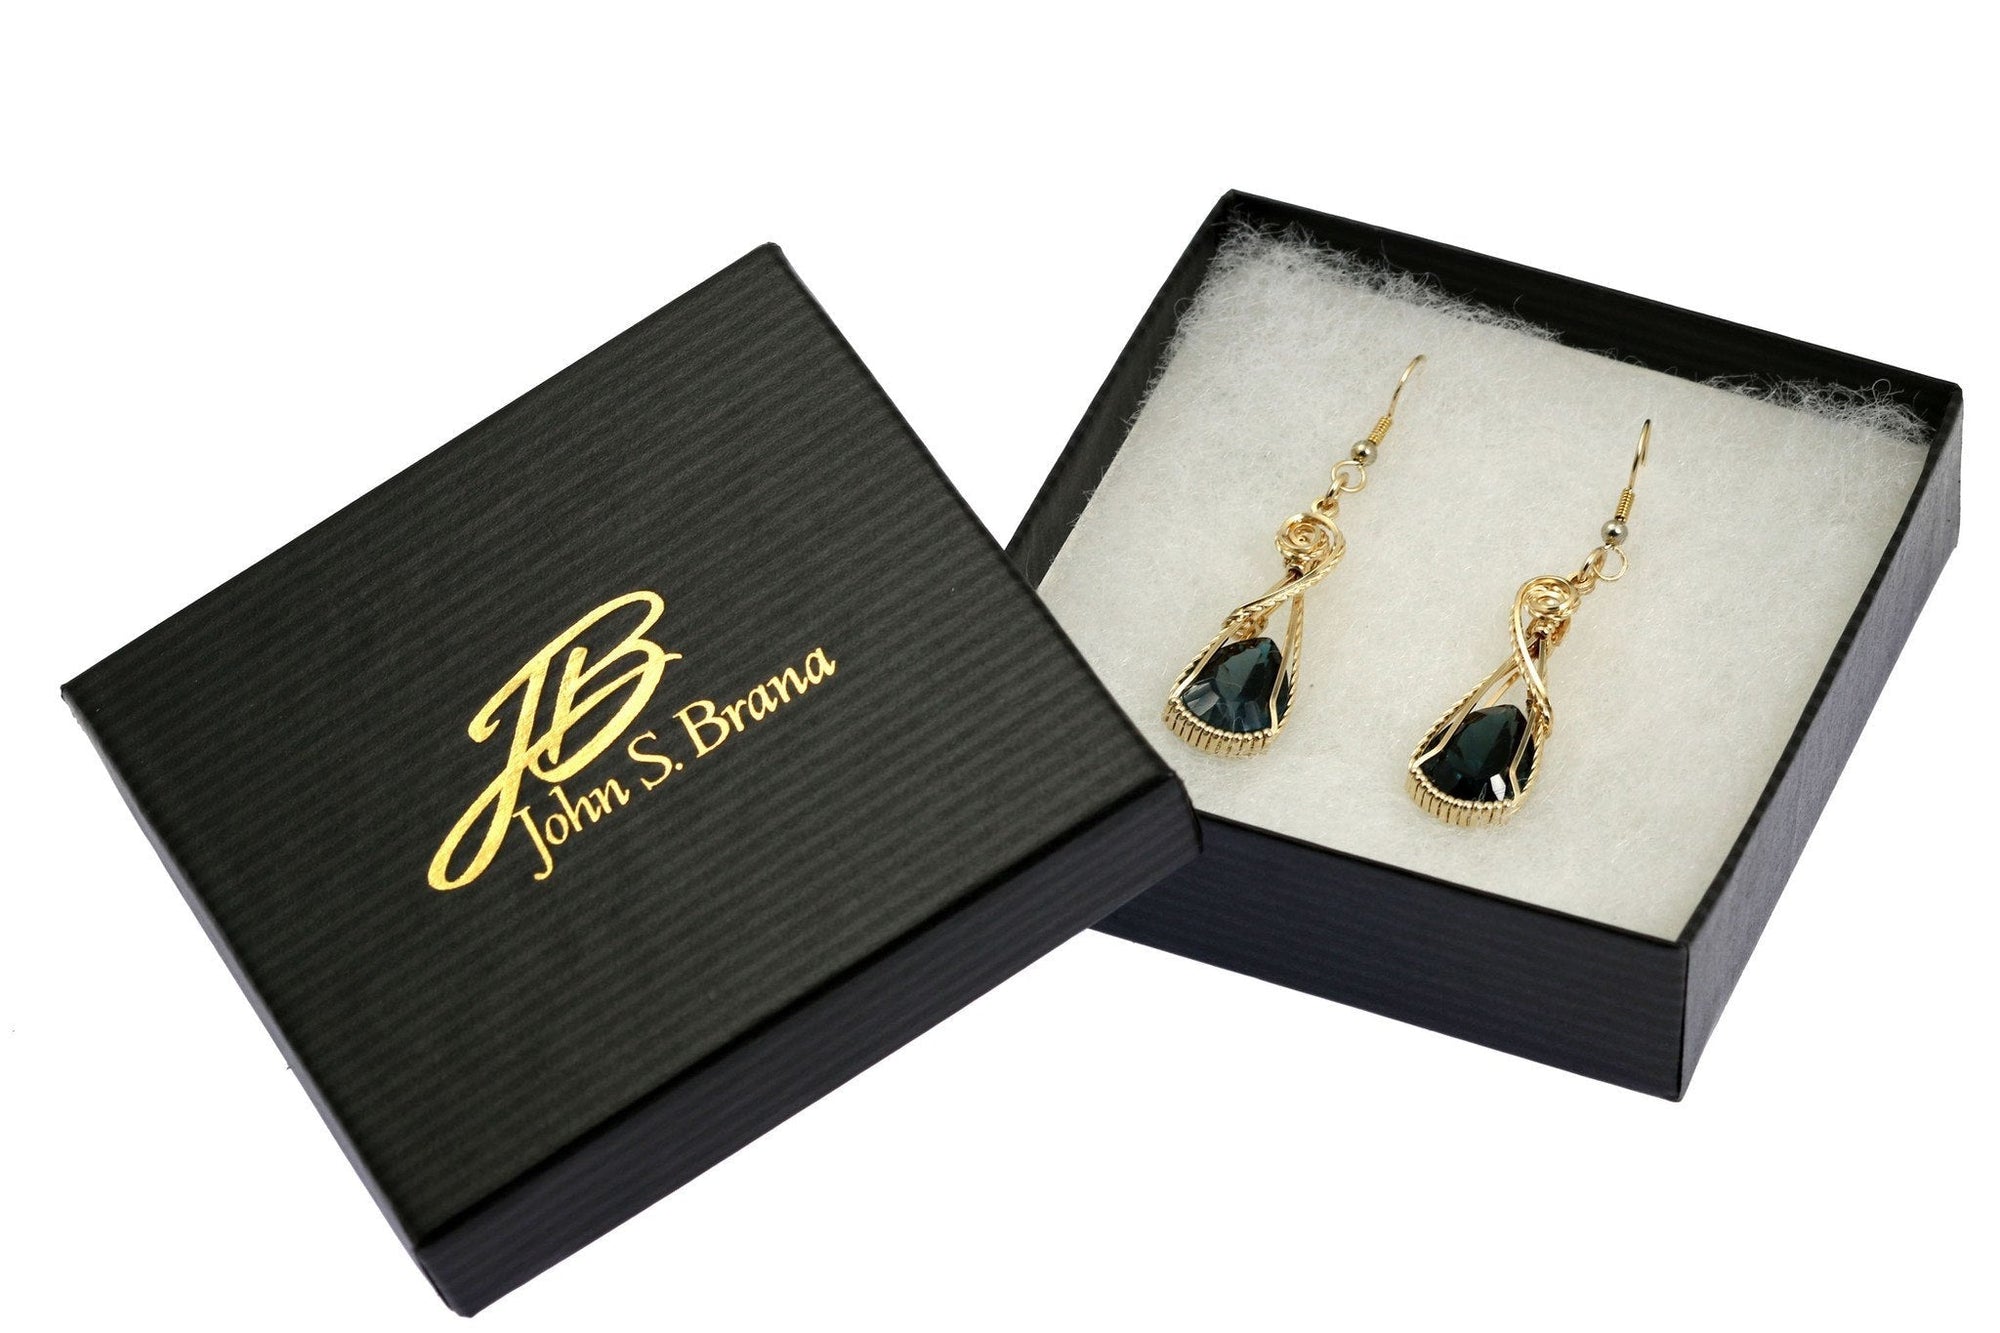 London Blue Topaz 14K Gold-filled Earrings in Black Gift Box